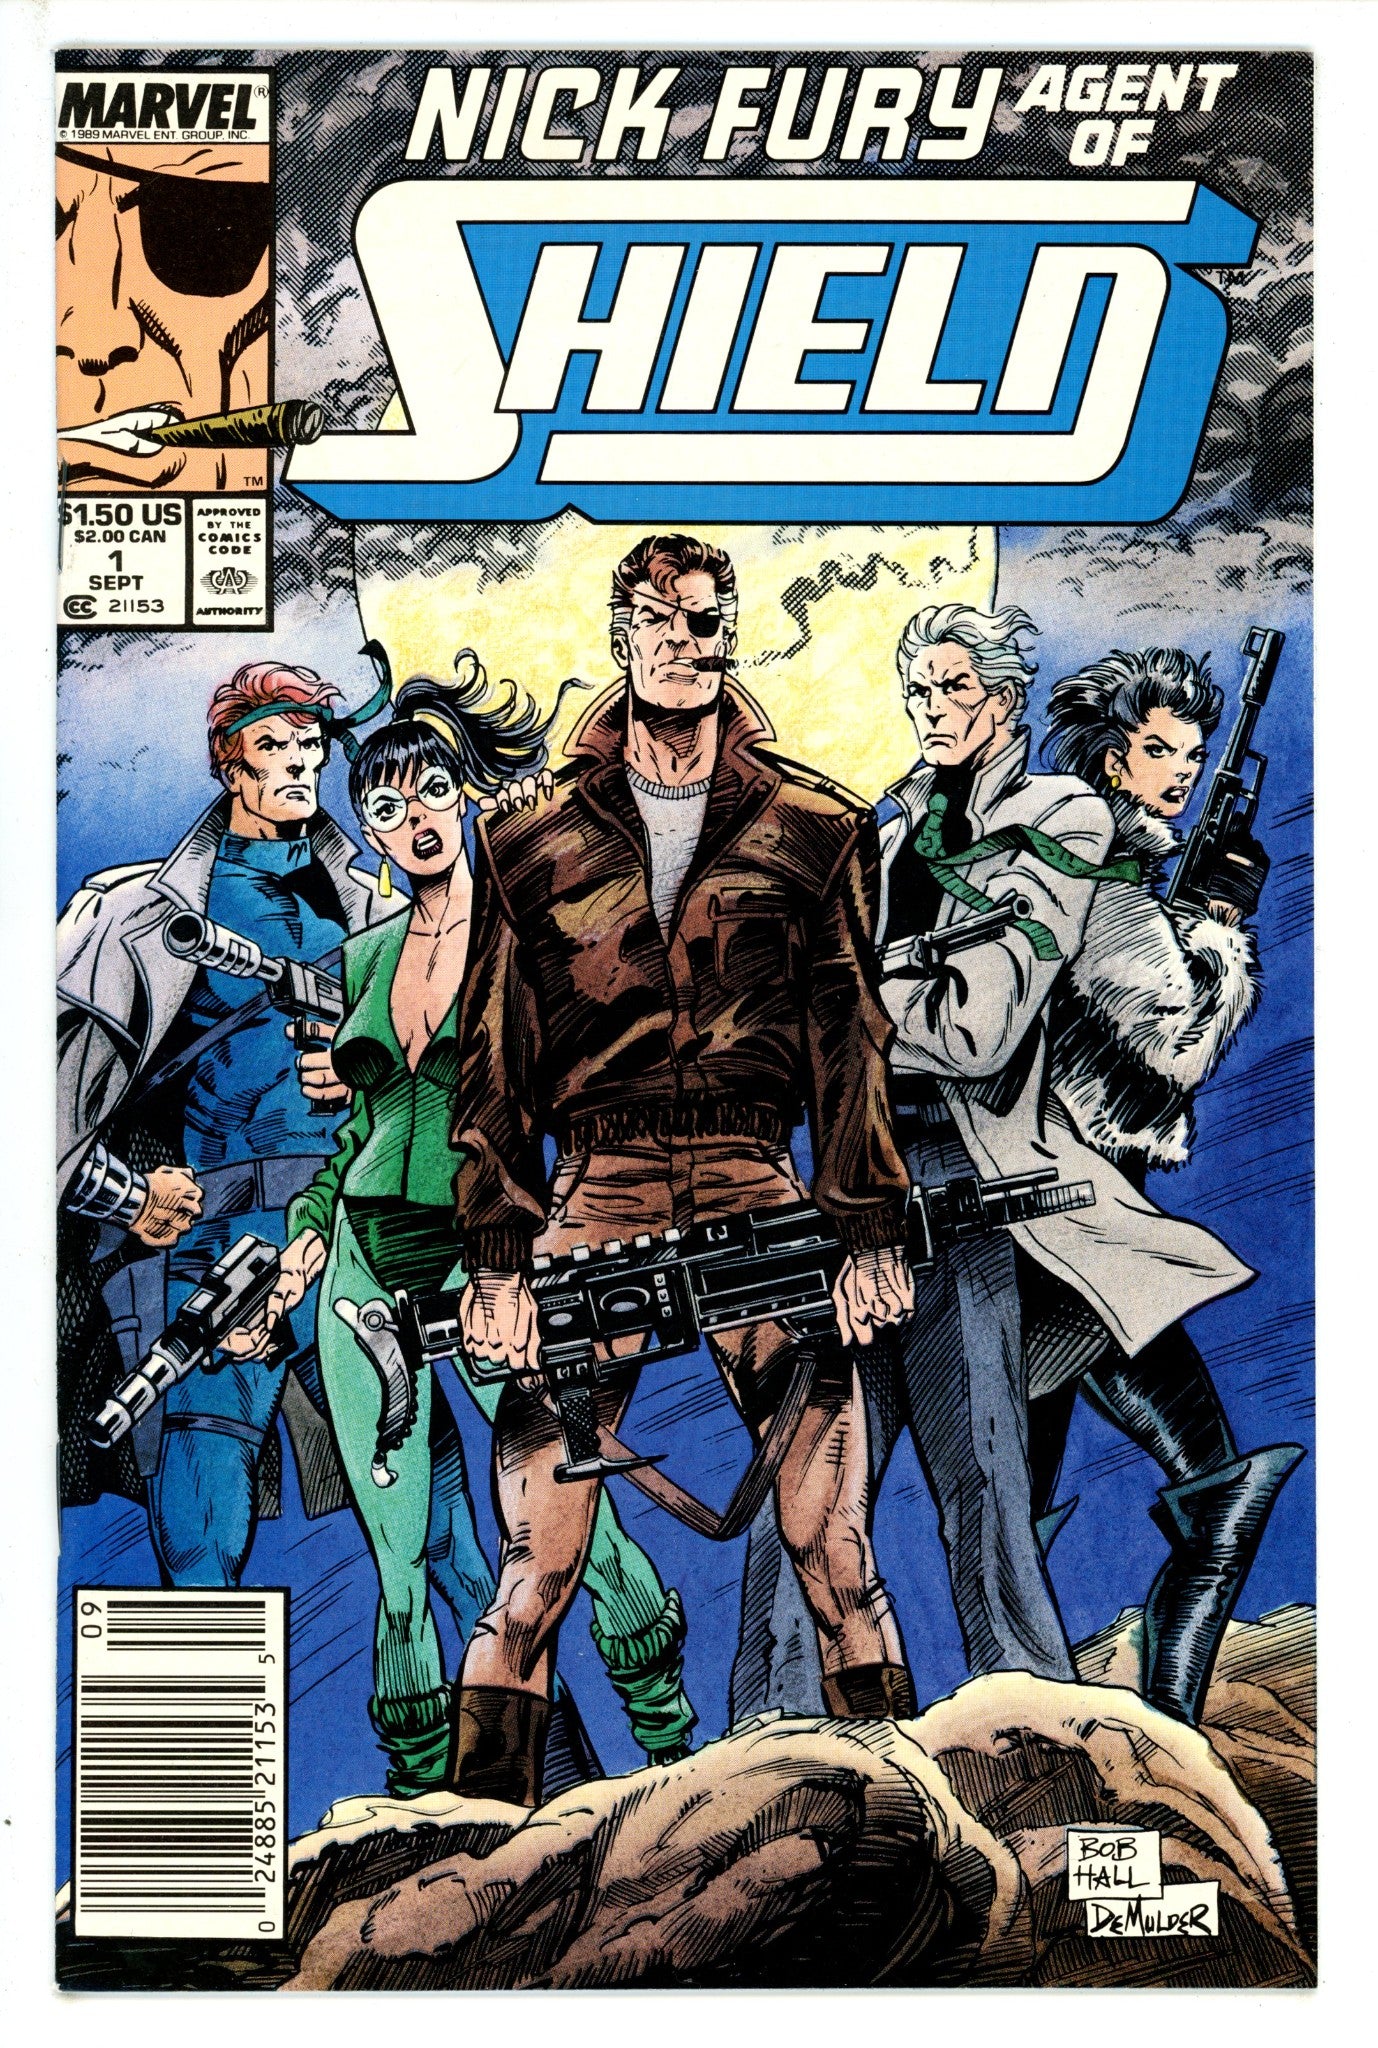 Nick Fury, Agent of S.H.I.E.L.D. Vol 4 1 Newsstand (1989)